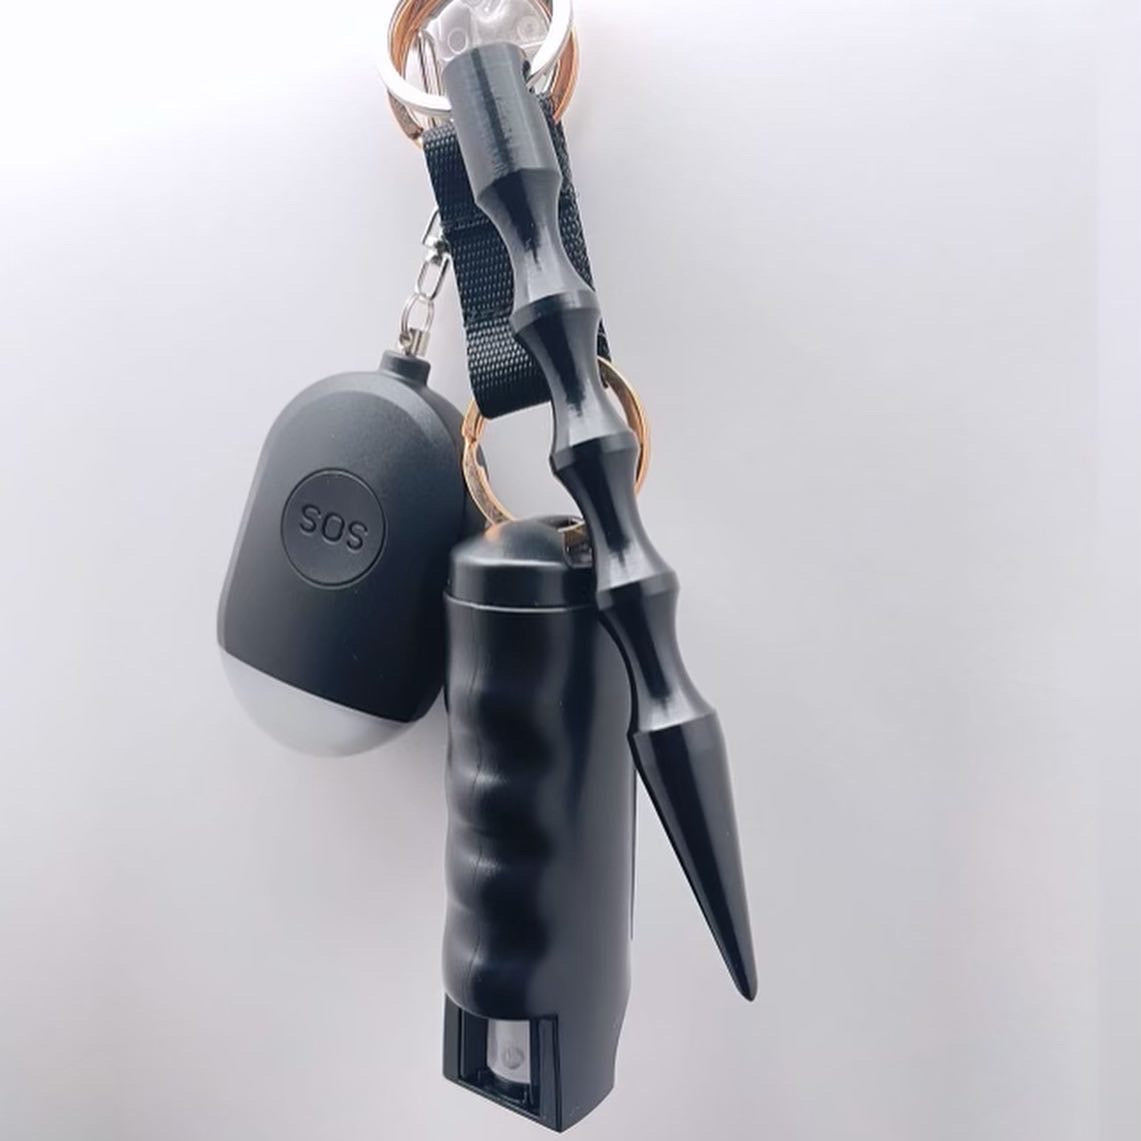 Black Bunny Safety Keychain Set